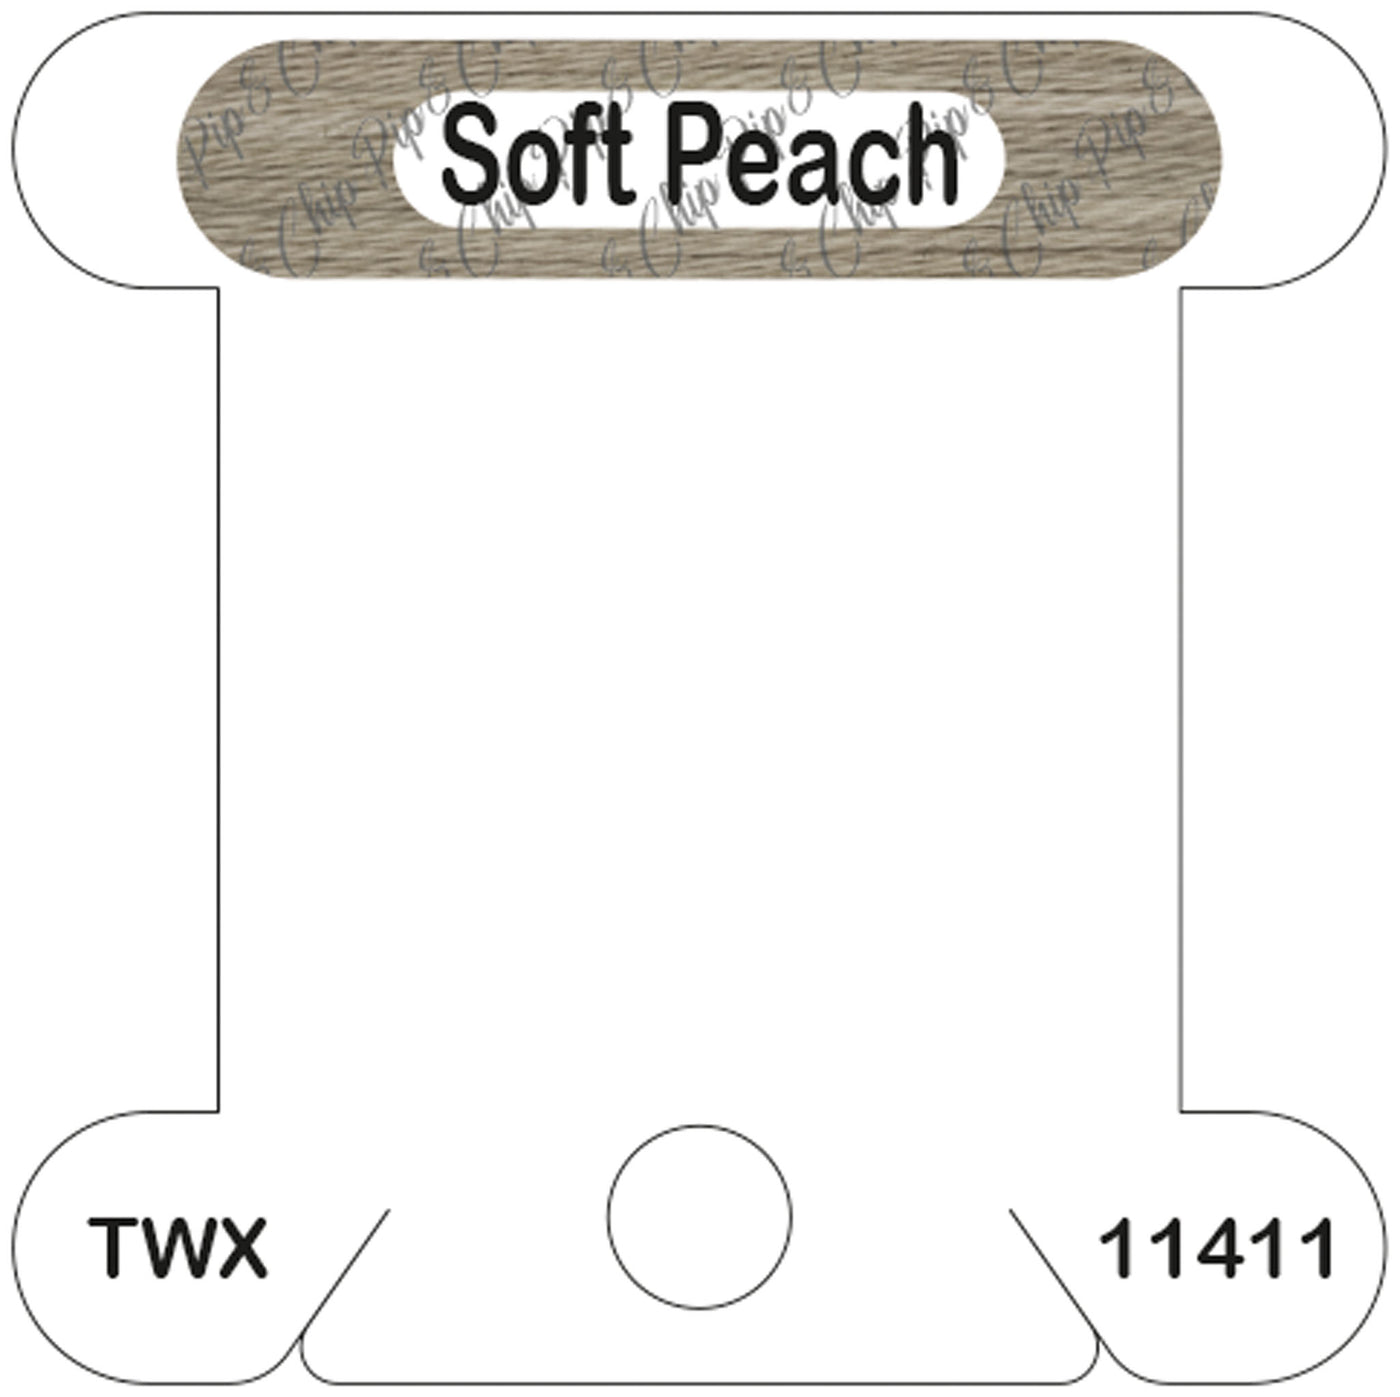 ThreadworX Soft Peach acrylic bobbin